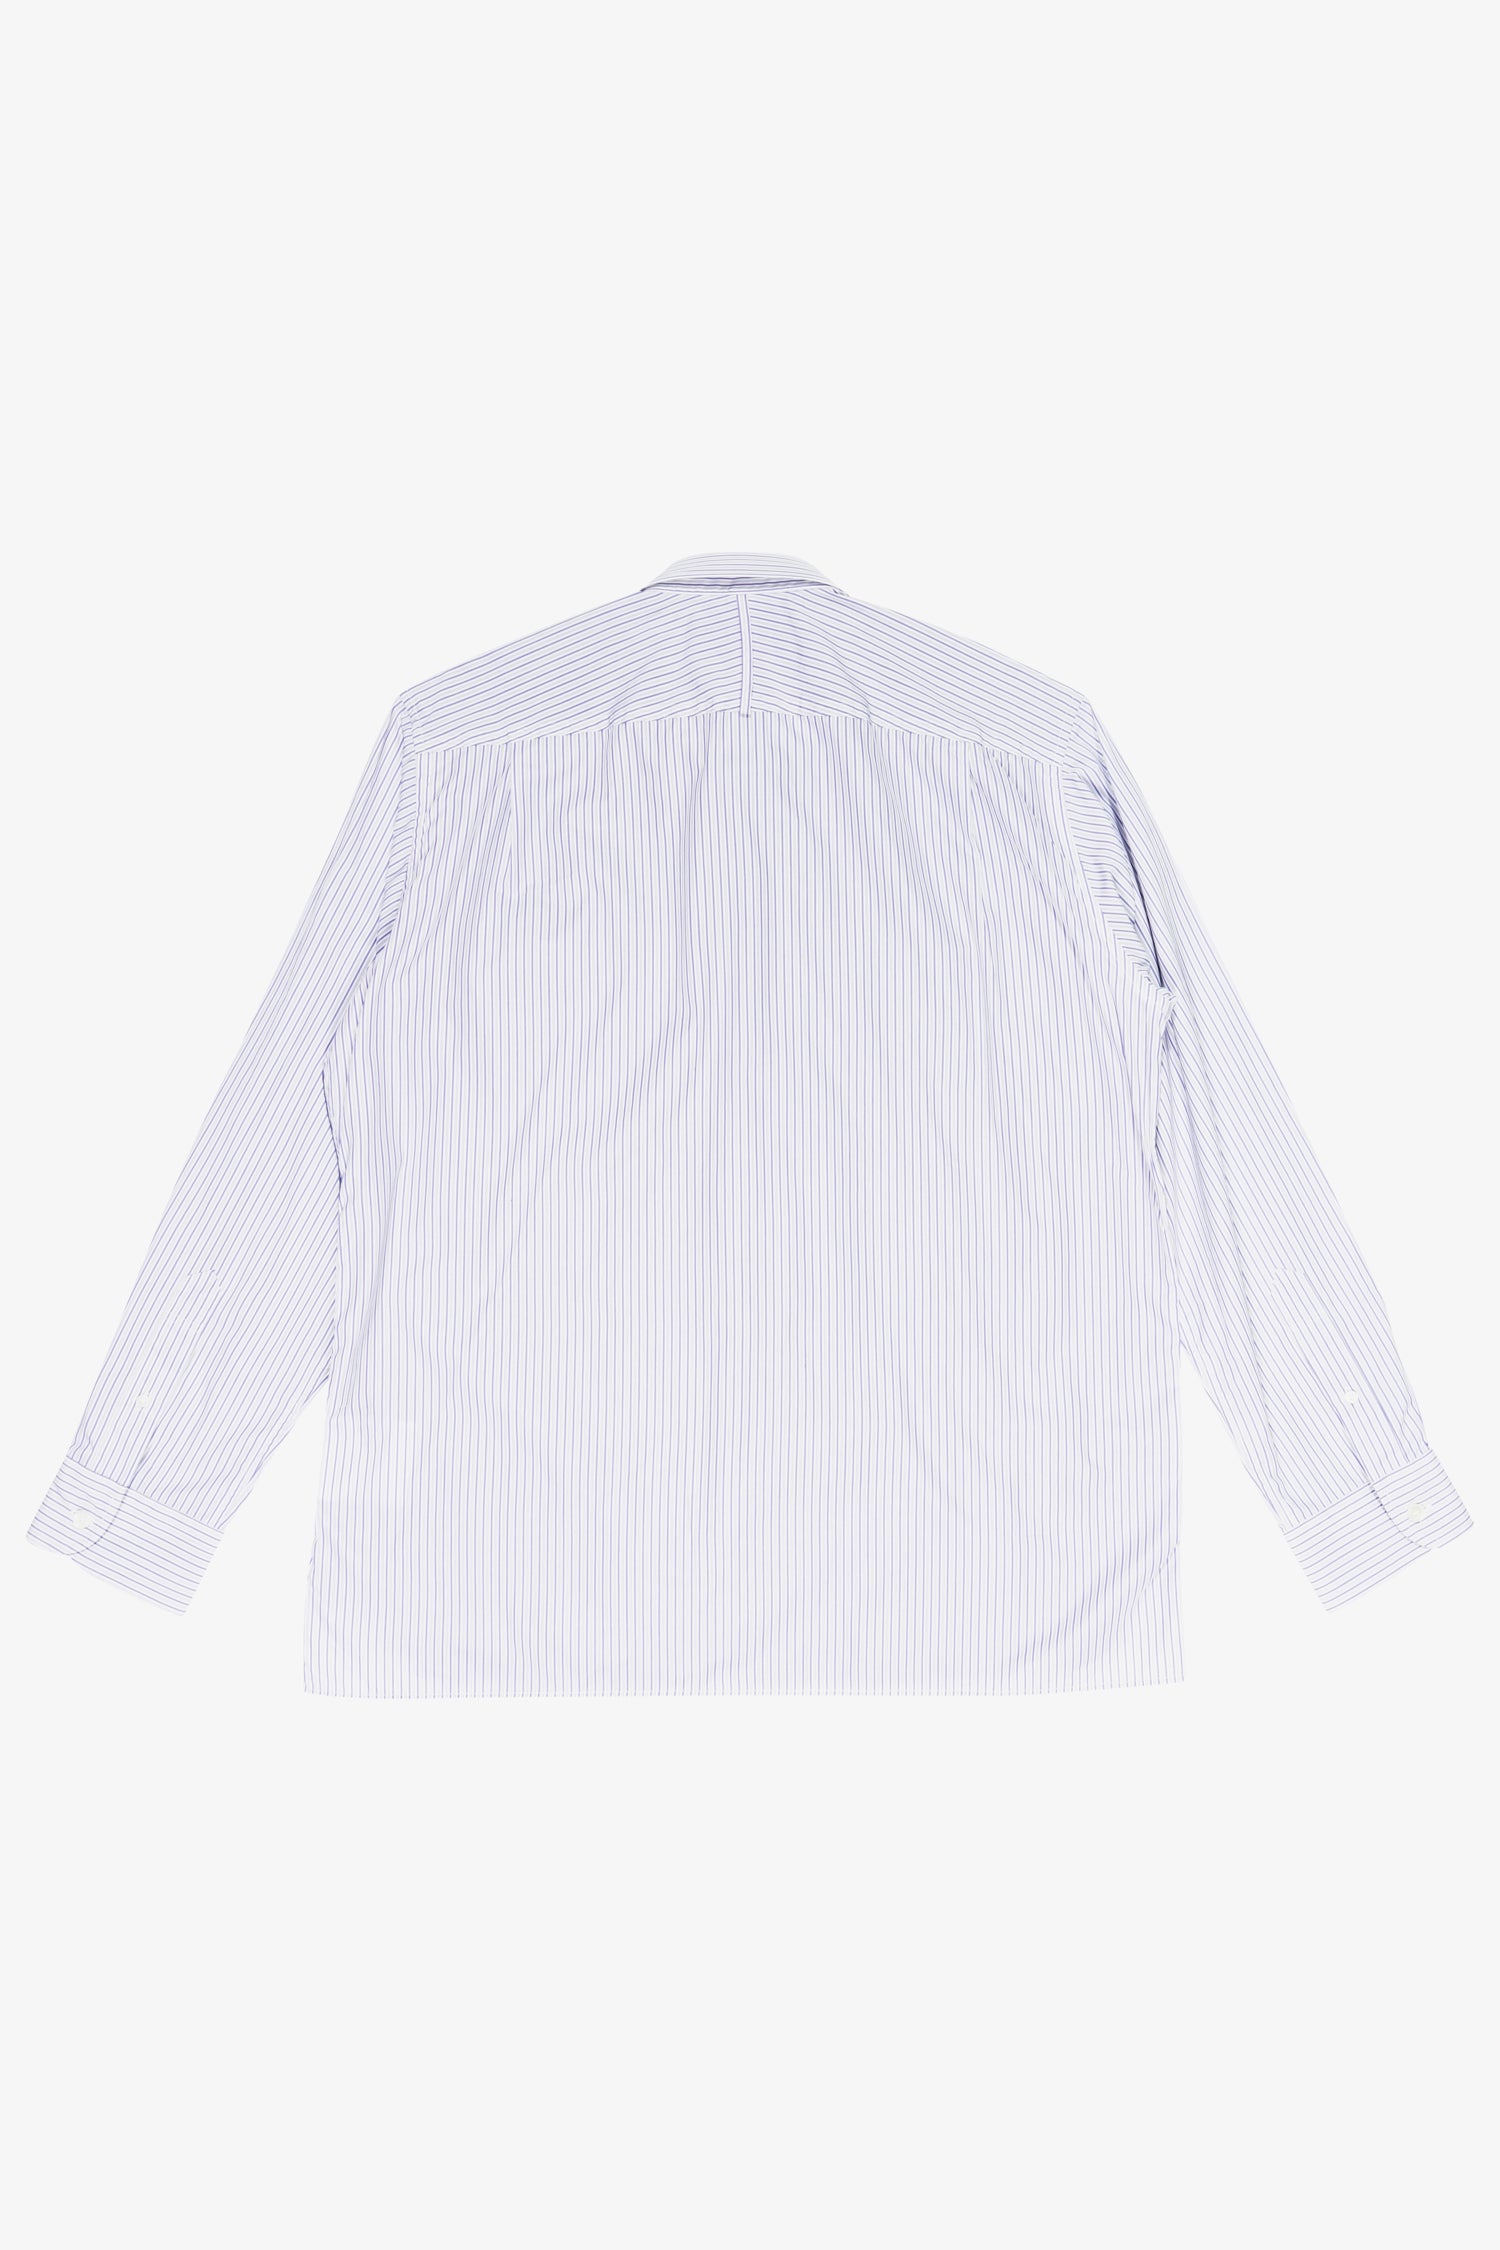 Selectshop FRAME - JUNYA WATANABE MAN Levi's Striped Shirt Shirt Dubai